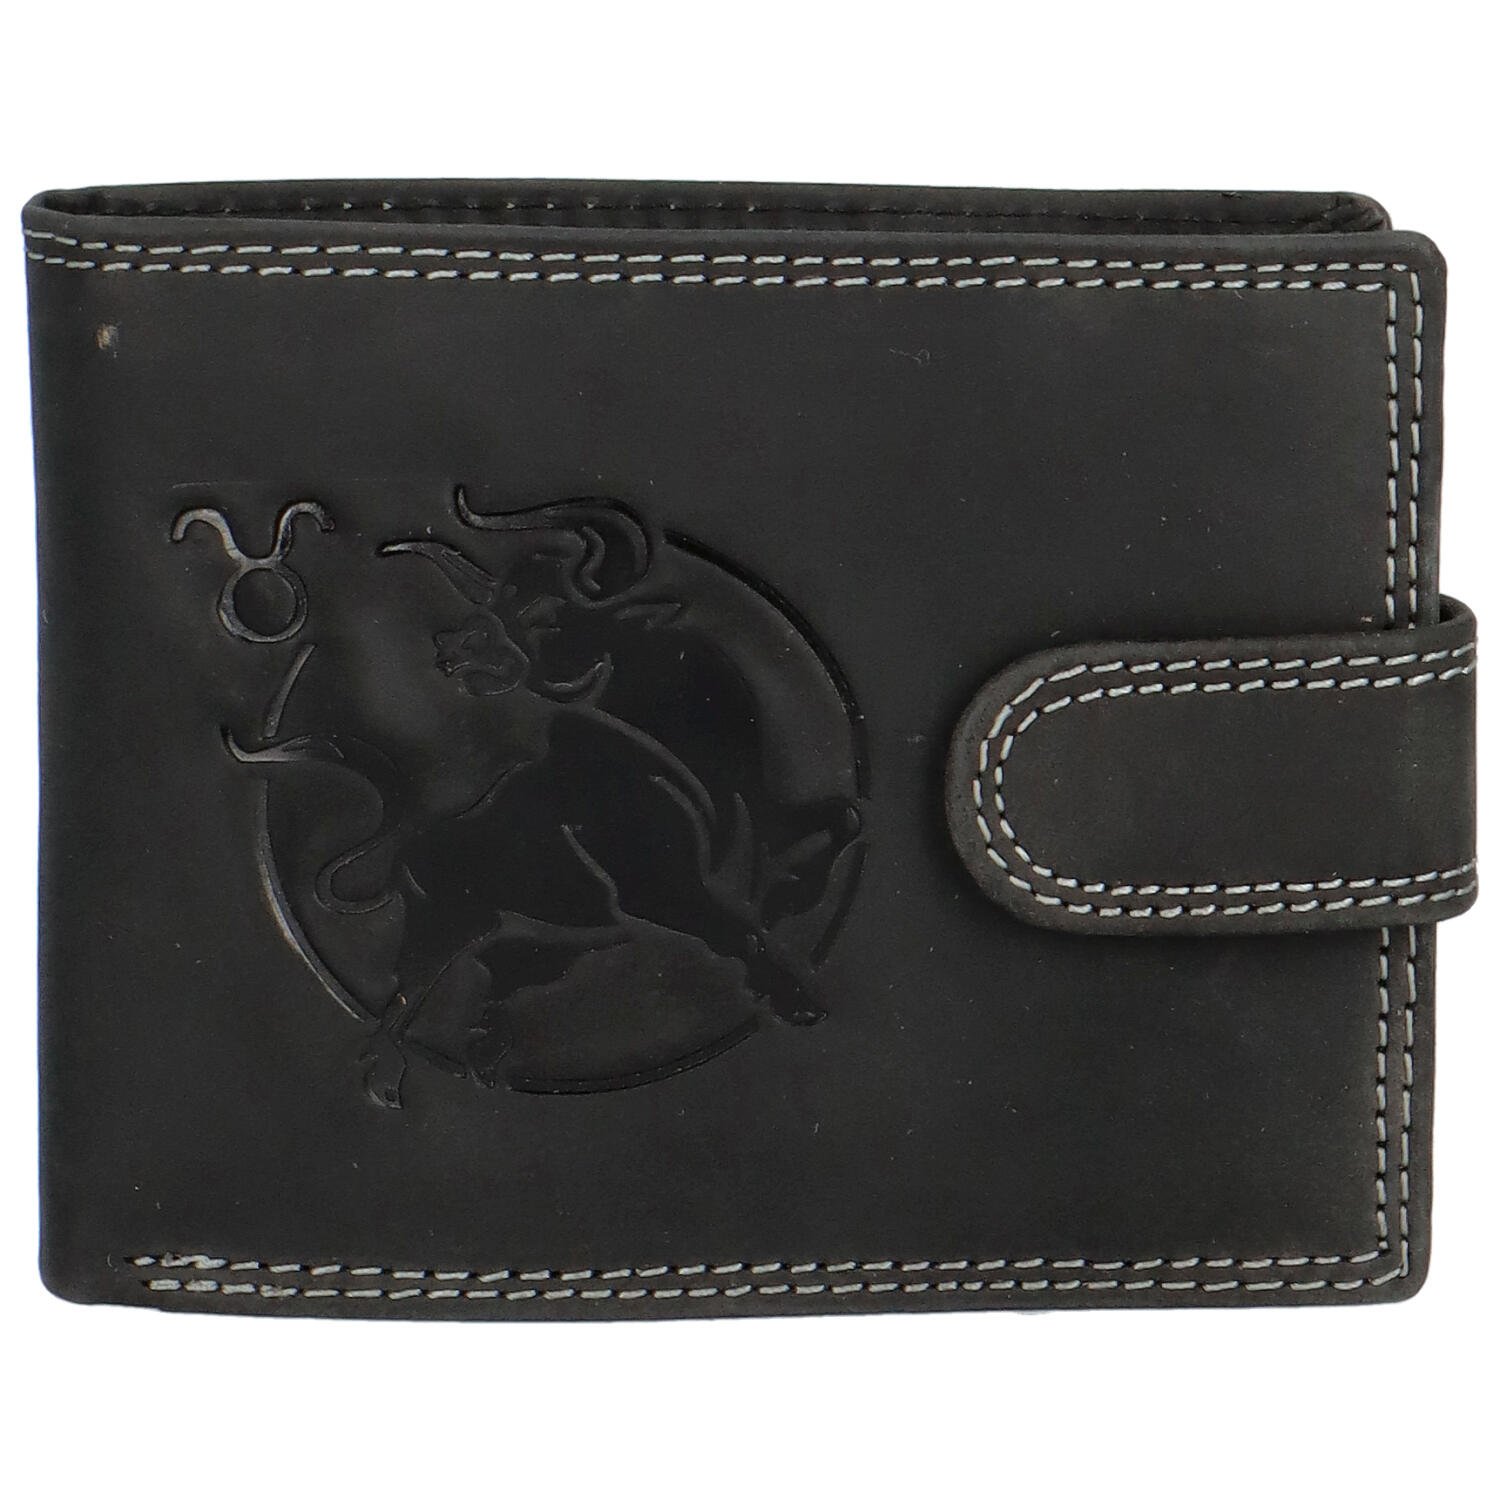 Luxusní pánská kožená peněženka Evereno, býk